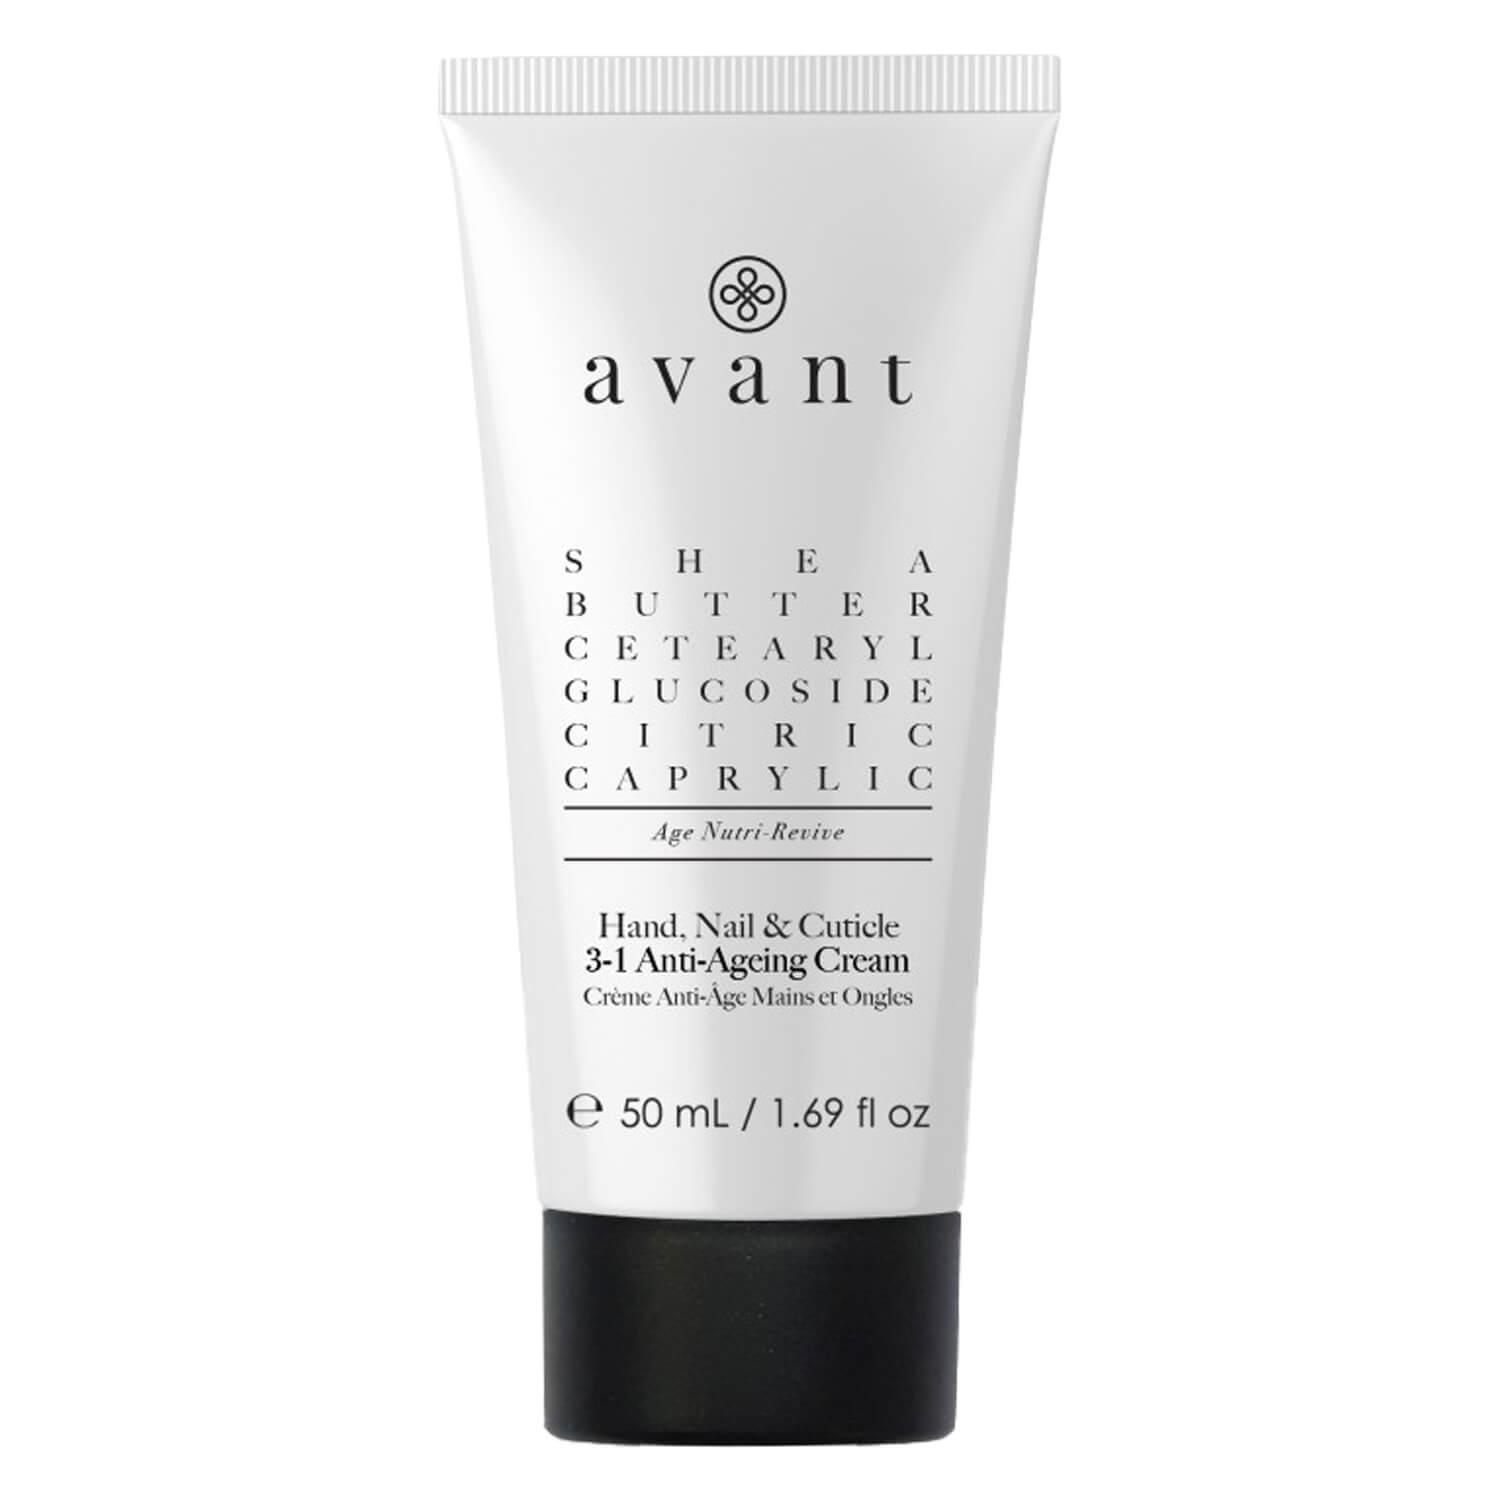 avant - Hand Nail & Cuticle Anti-Ageing Cream